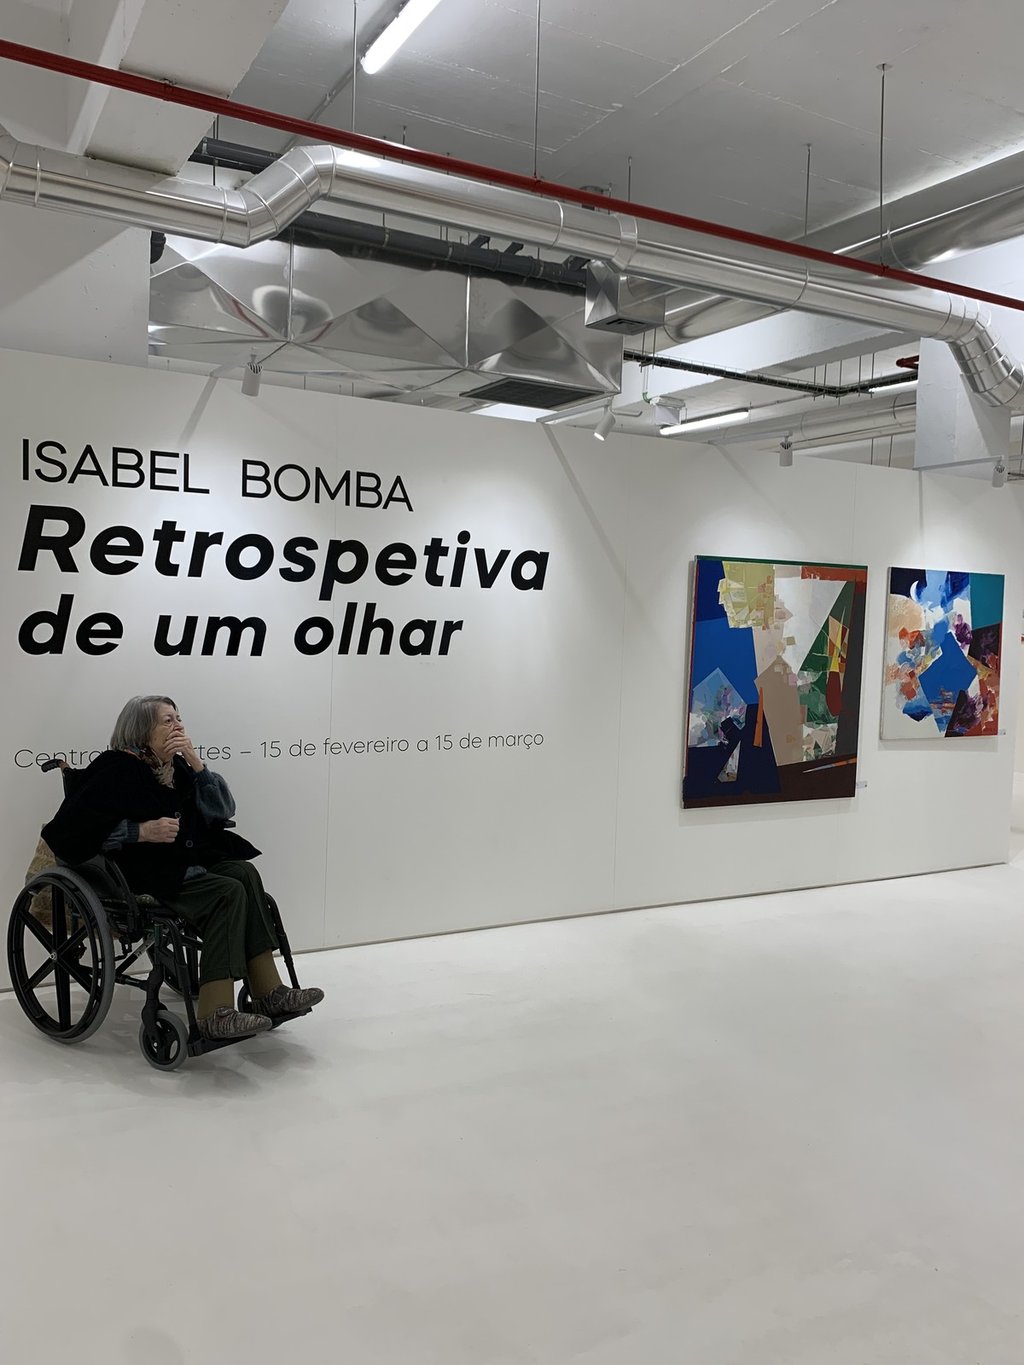 Exposição "Retrospetiva de um olhar" chegou a Porto de Mós!